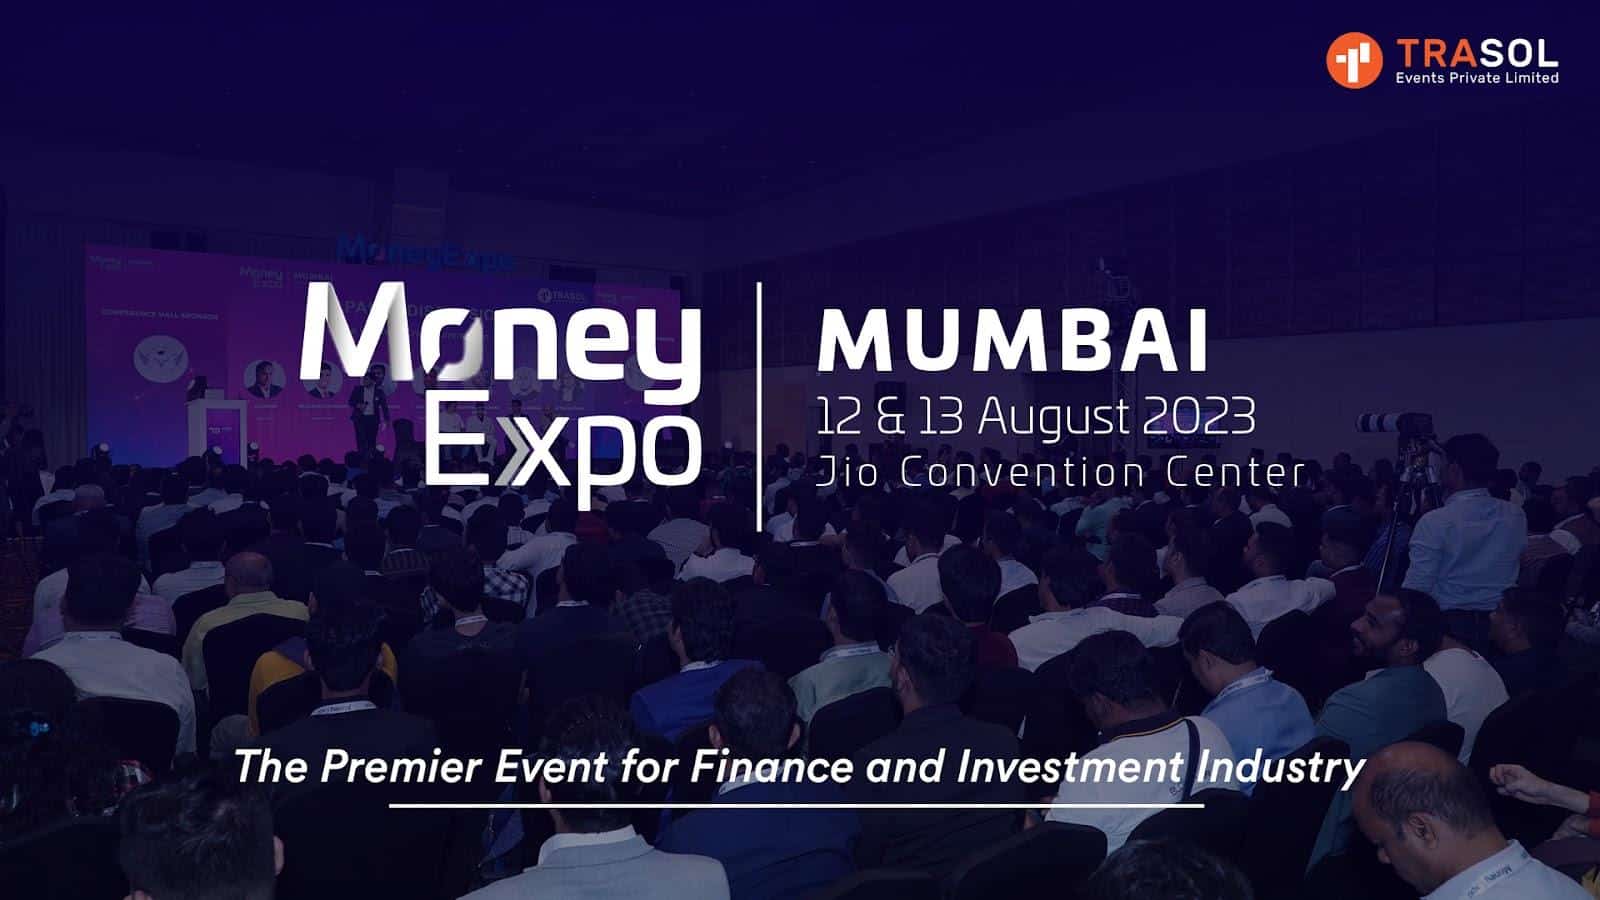 India's Biggest Money Expo Happening in Mumbai